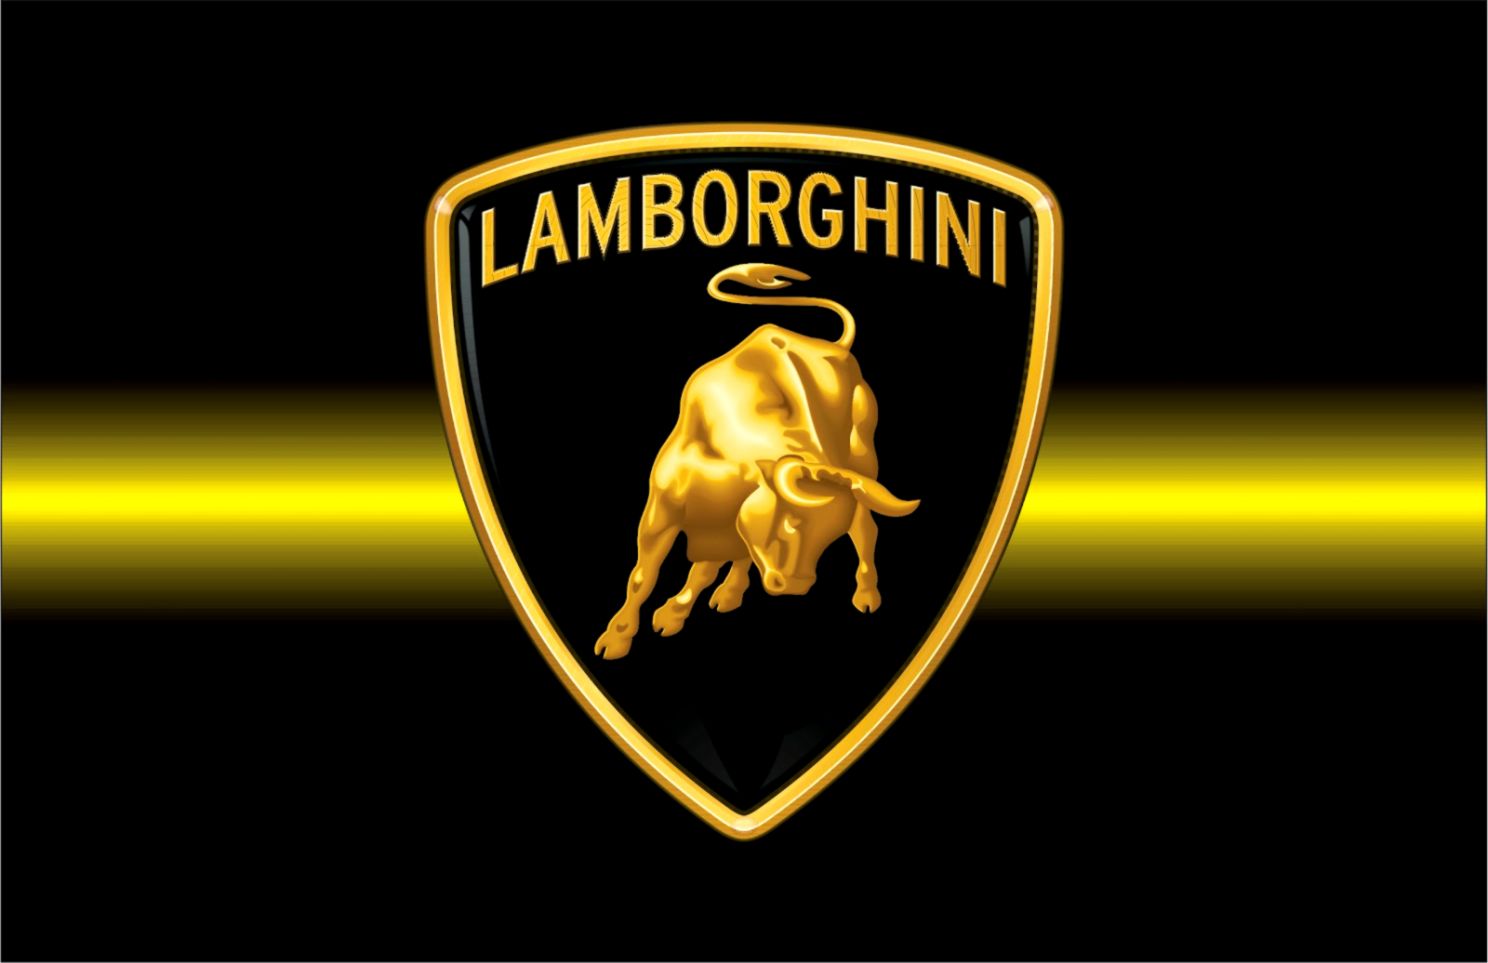 Lamborghini Logo Real - Lamborghini Logo Wallpaper Hd - 1488x963 Wallpaper  